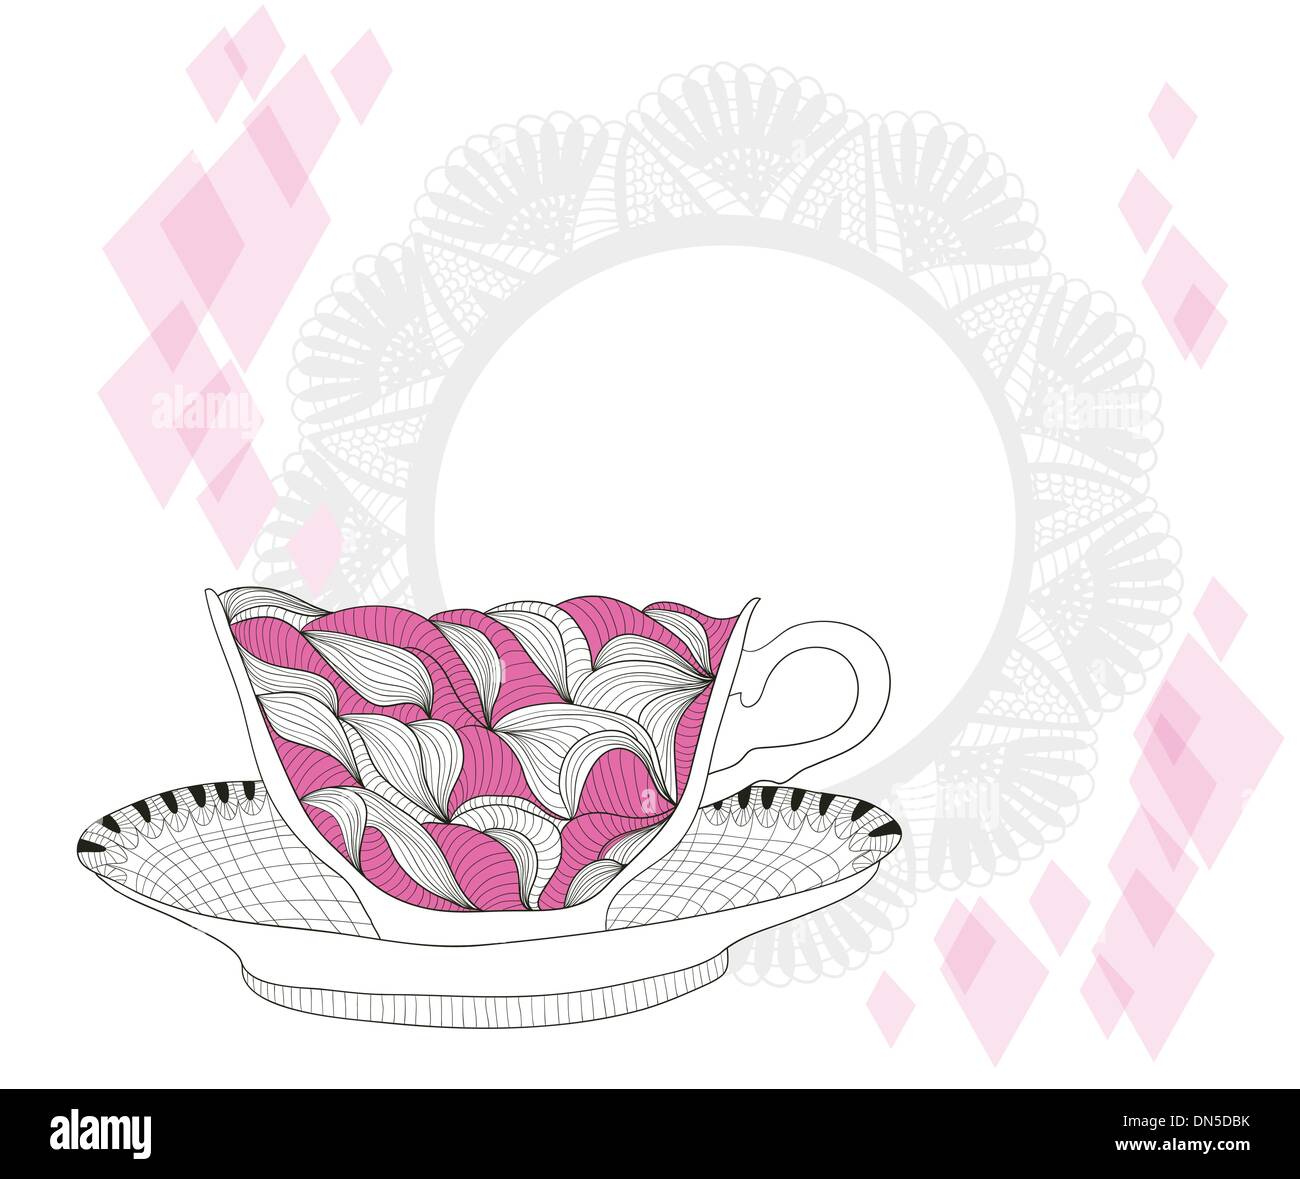 Kaffee und Tee-Becher mit abstrakten Doodle Muster. Tasse-Hintergrund. Stock Vektor